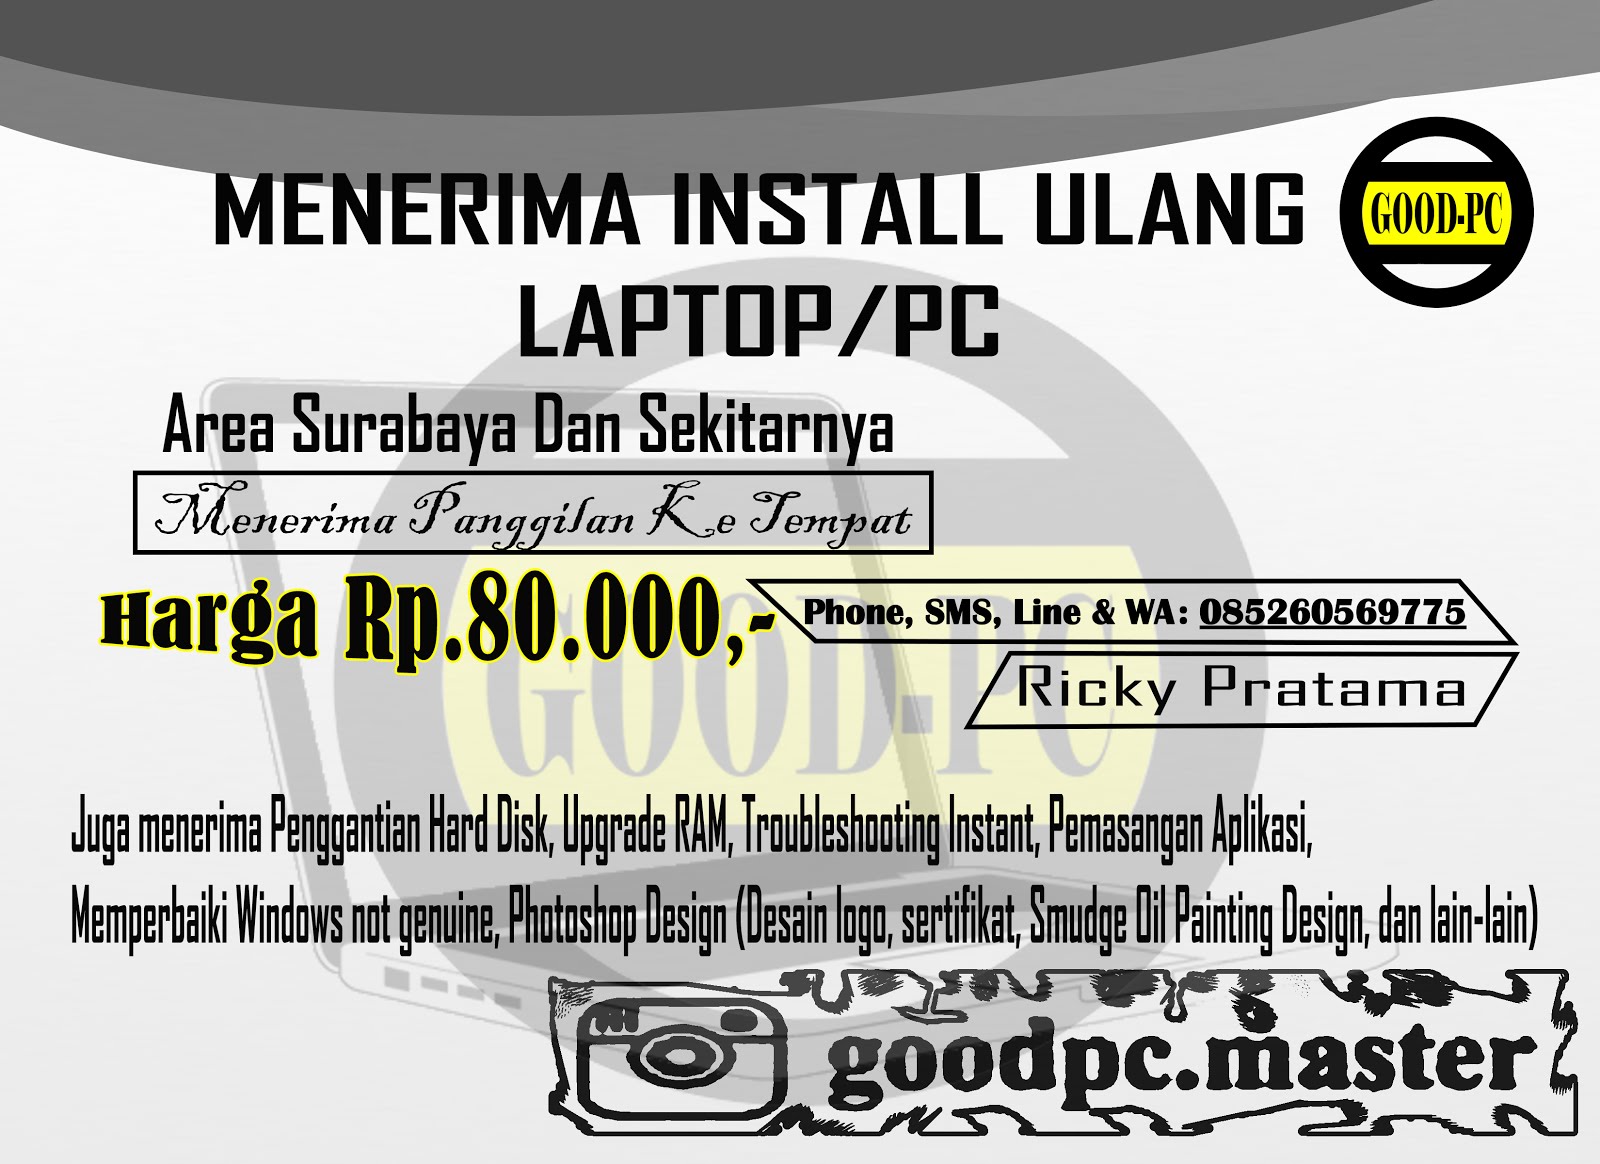 Install ulang Laptop Surabaya